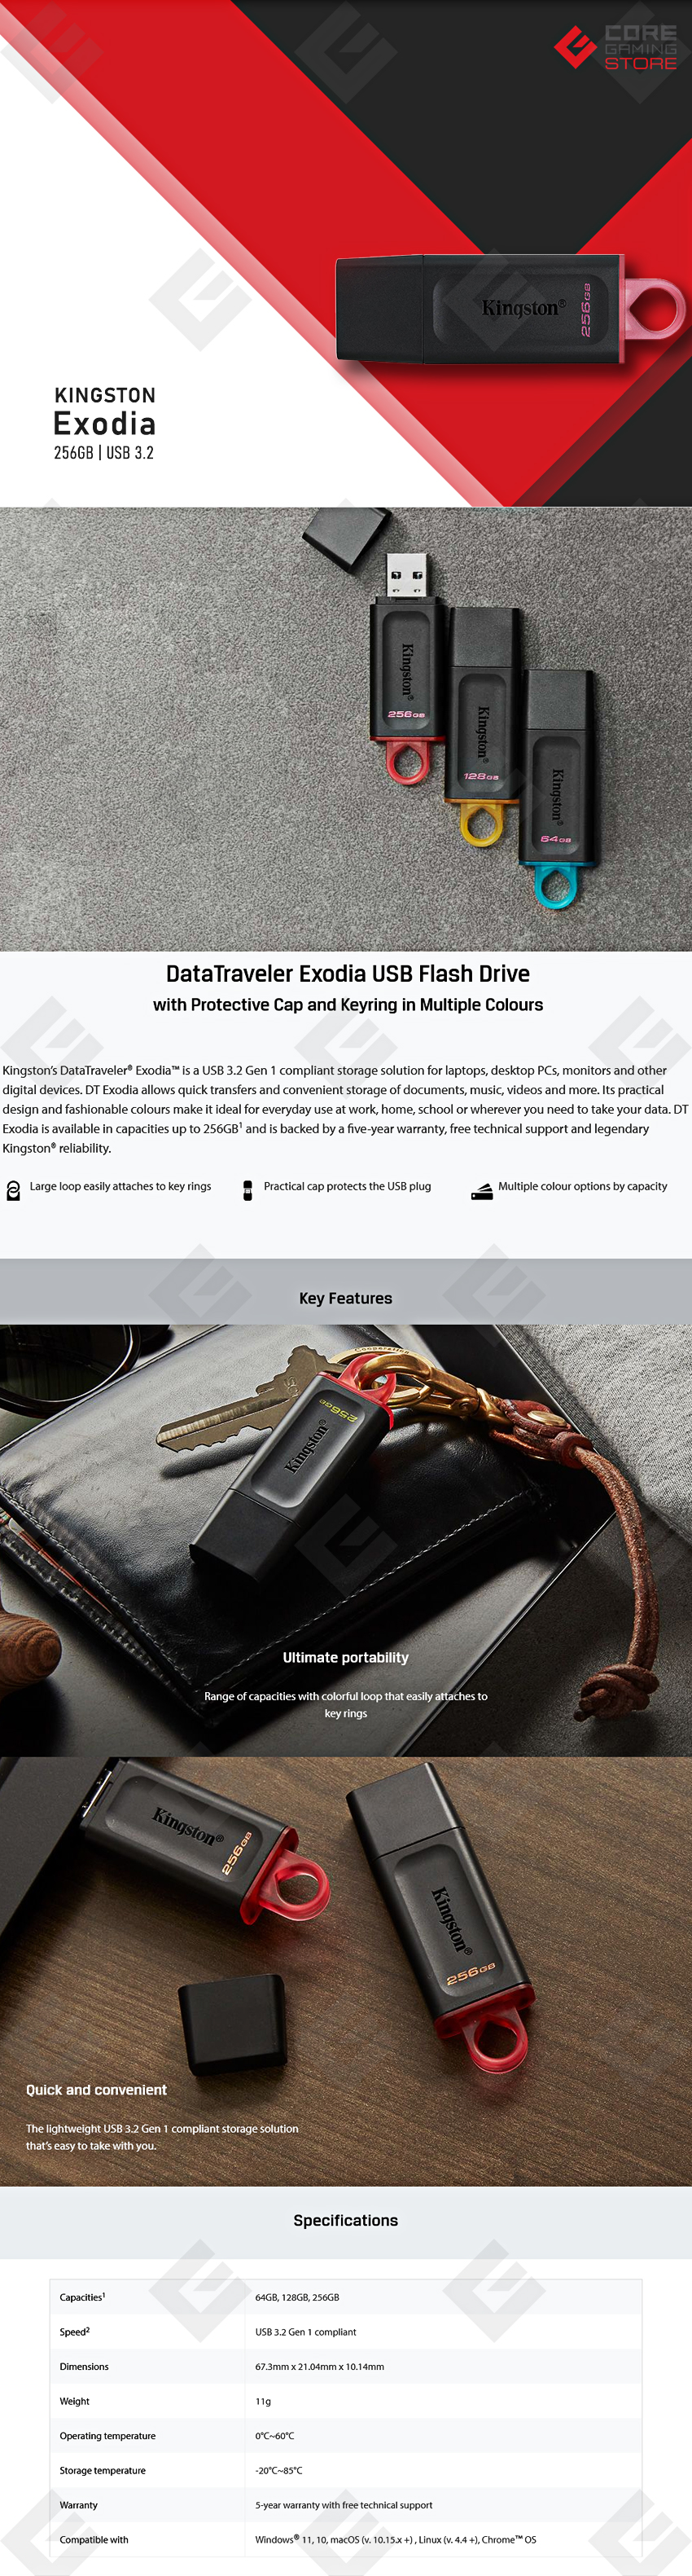 Memoria USB Kingston DataTraveler Exodia 256GB, Negra, USB 3.2 - DTX-256GB